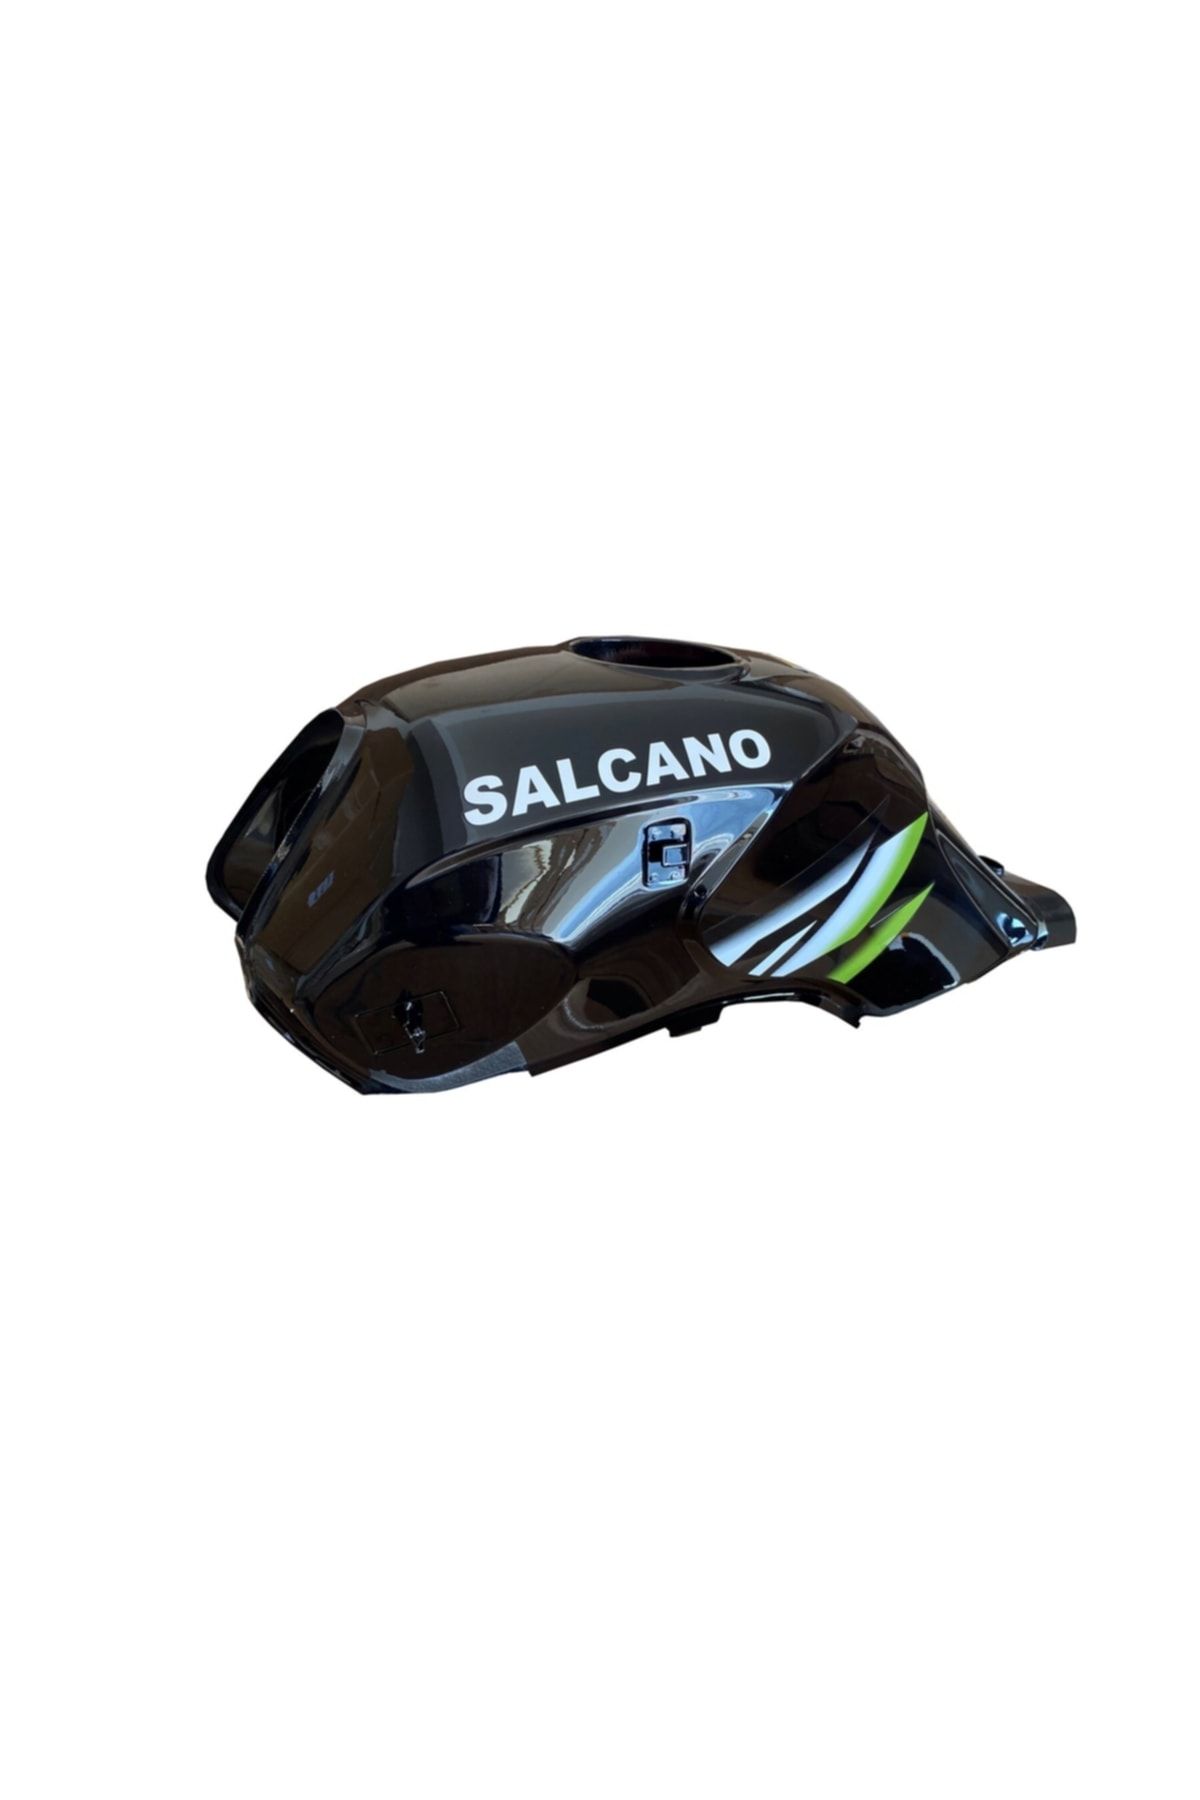 Salcano Runner 150 Yakıt (benzin) Deposu Yeşil Çizgili